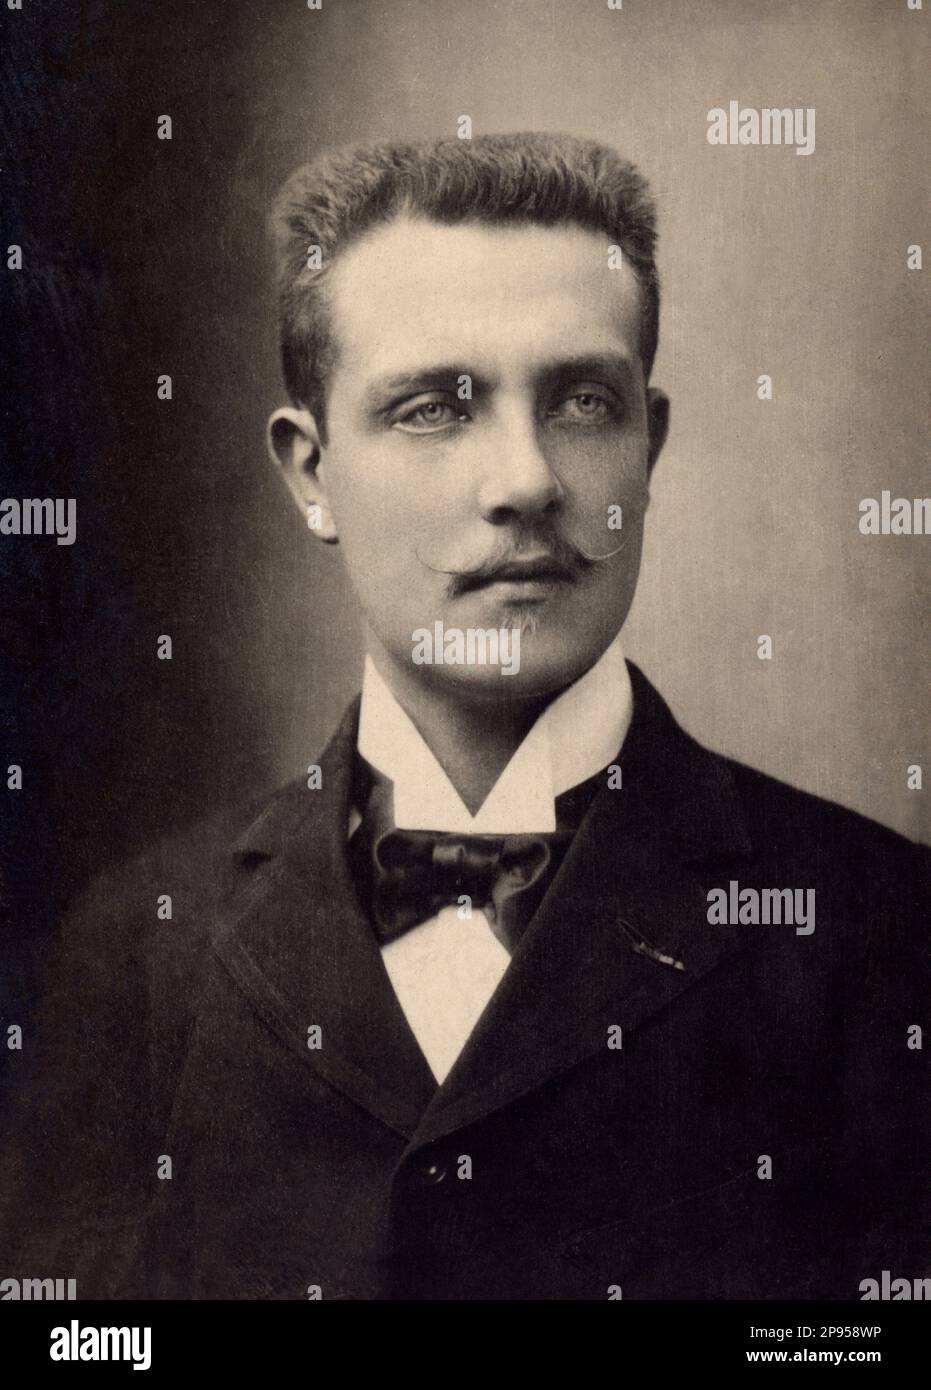 1890 ca , Paris , France : Prince HENRI D'ORLEANS ( 1867 - 1901 ) , son of  Prince Robert d'Orleans ( 1840 - 1910 ), Duc de Chartres, et de Françoise d'Orleans-Joinvillewas . Henri was explorer and naturalist dead for malharia in Saigon . - SCIENZA - SCIENCE  - ESPLORATORE - EXPLORER - ESPLORAZIONI - ETIOPIA  -  NATURALISTA - NATURALISMO - NATURALIST - NATURALISM - royalty - nobili - nobiltà  - nobility - VIETNAM  - collar - colletto - tie - cravatta - tie bow - baffi - moustache ---- Archivio GBB Stock Photo